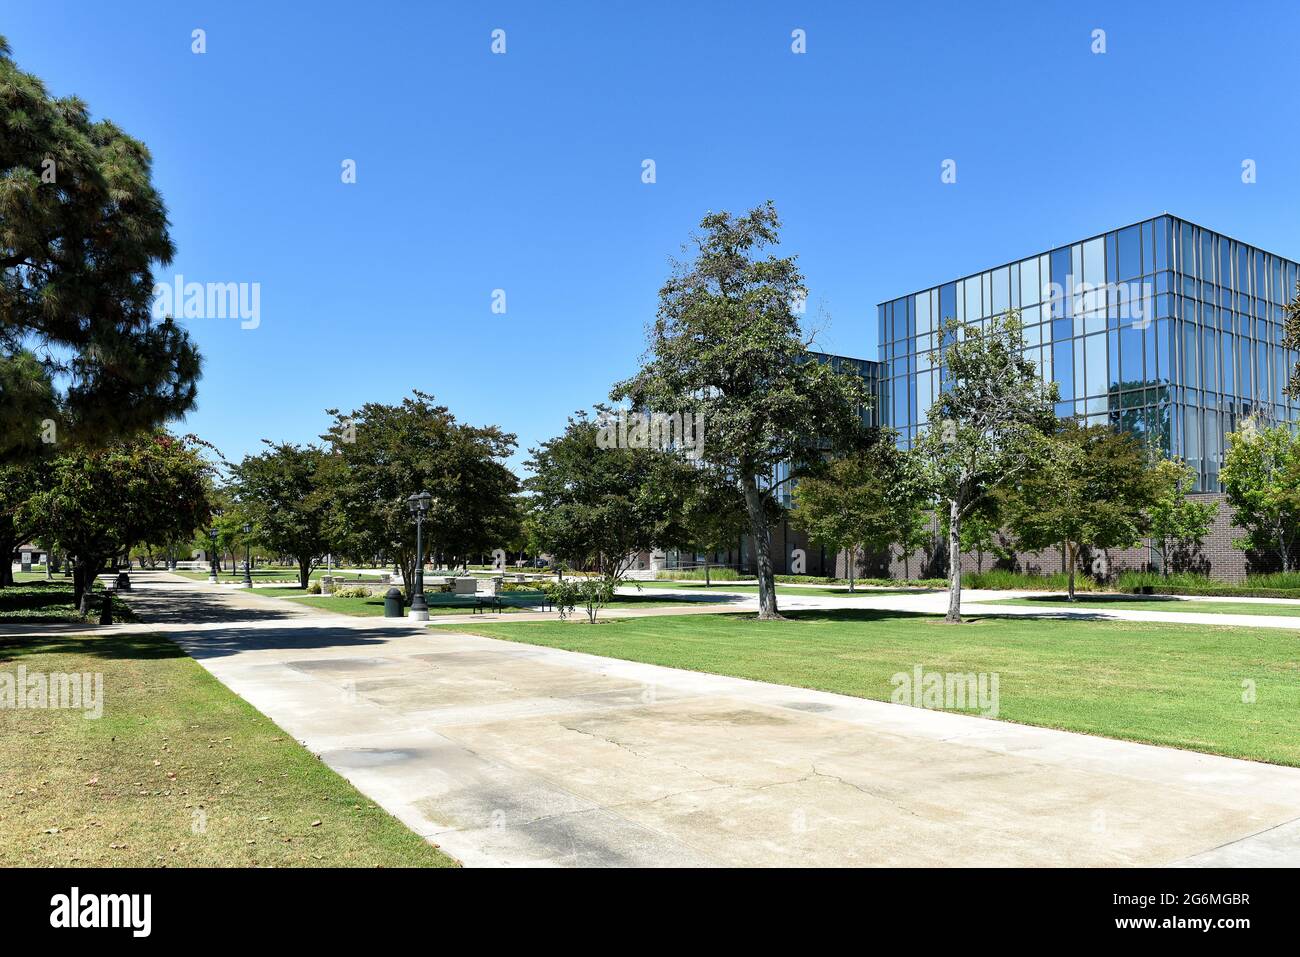 WESTMINSTER, KALIFORNIEN - 5. JULI 2021: Das Civic Center Commons, eine städtische Oase mitten in den Regierungs- und Dienstleistungsgebäuden der Stadt. Stockfoto